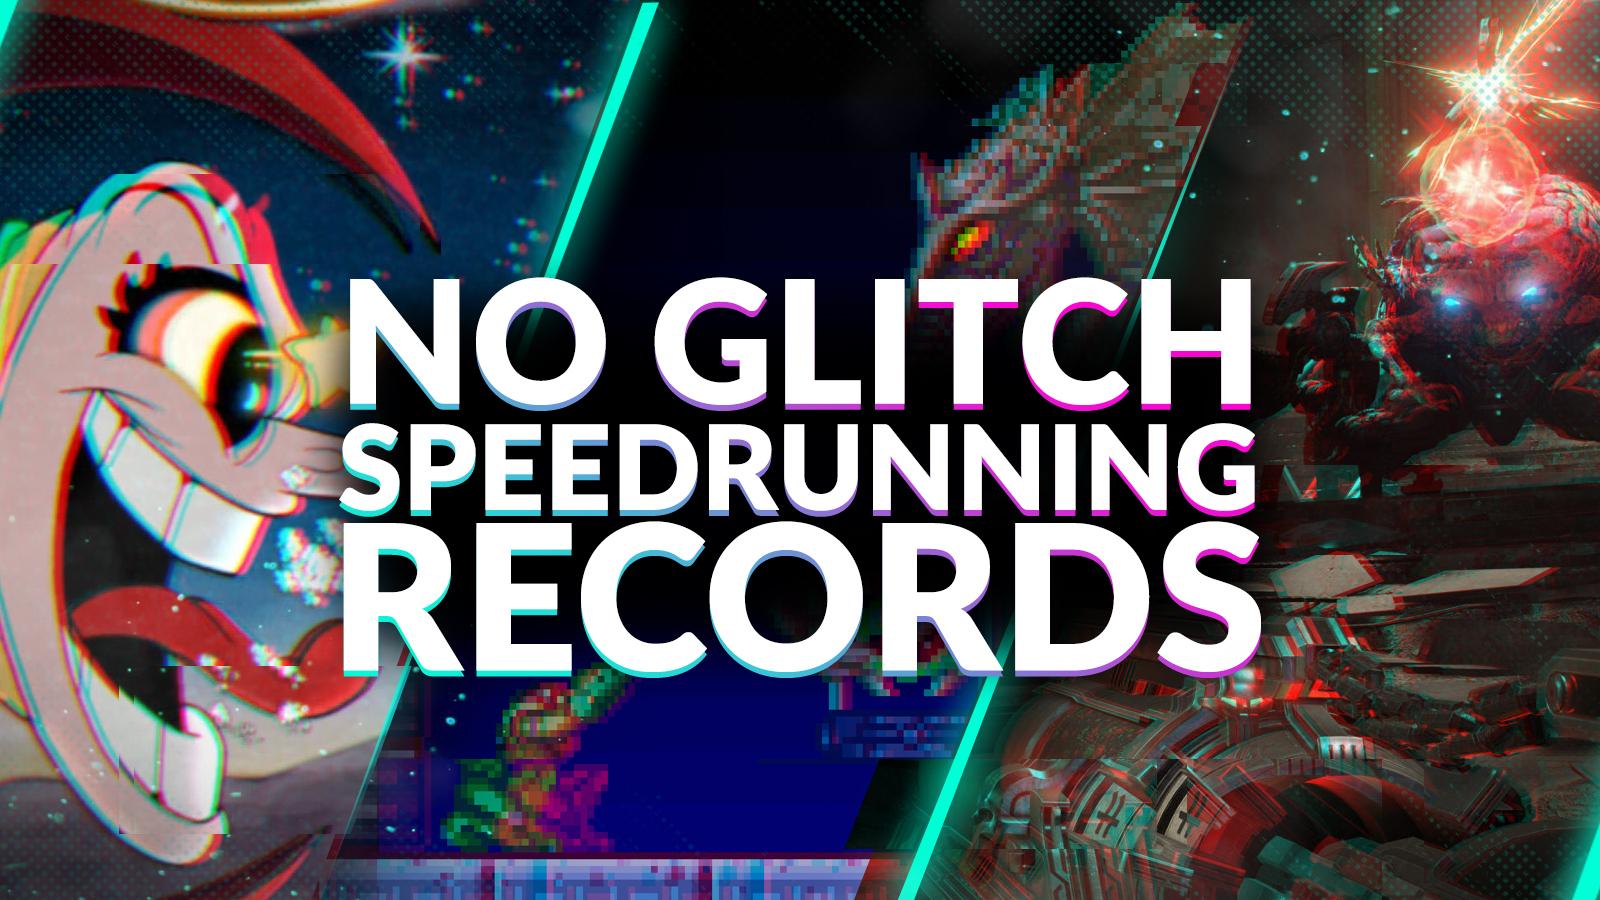 No glitch speedrunning records